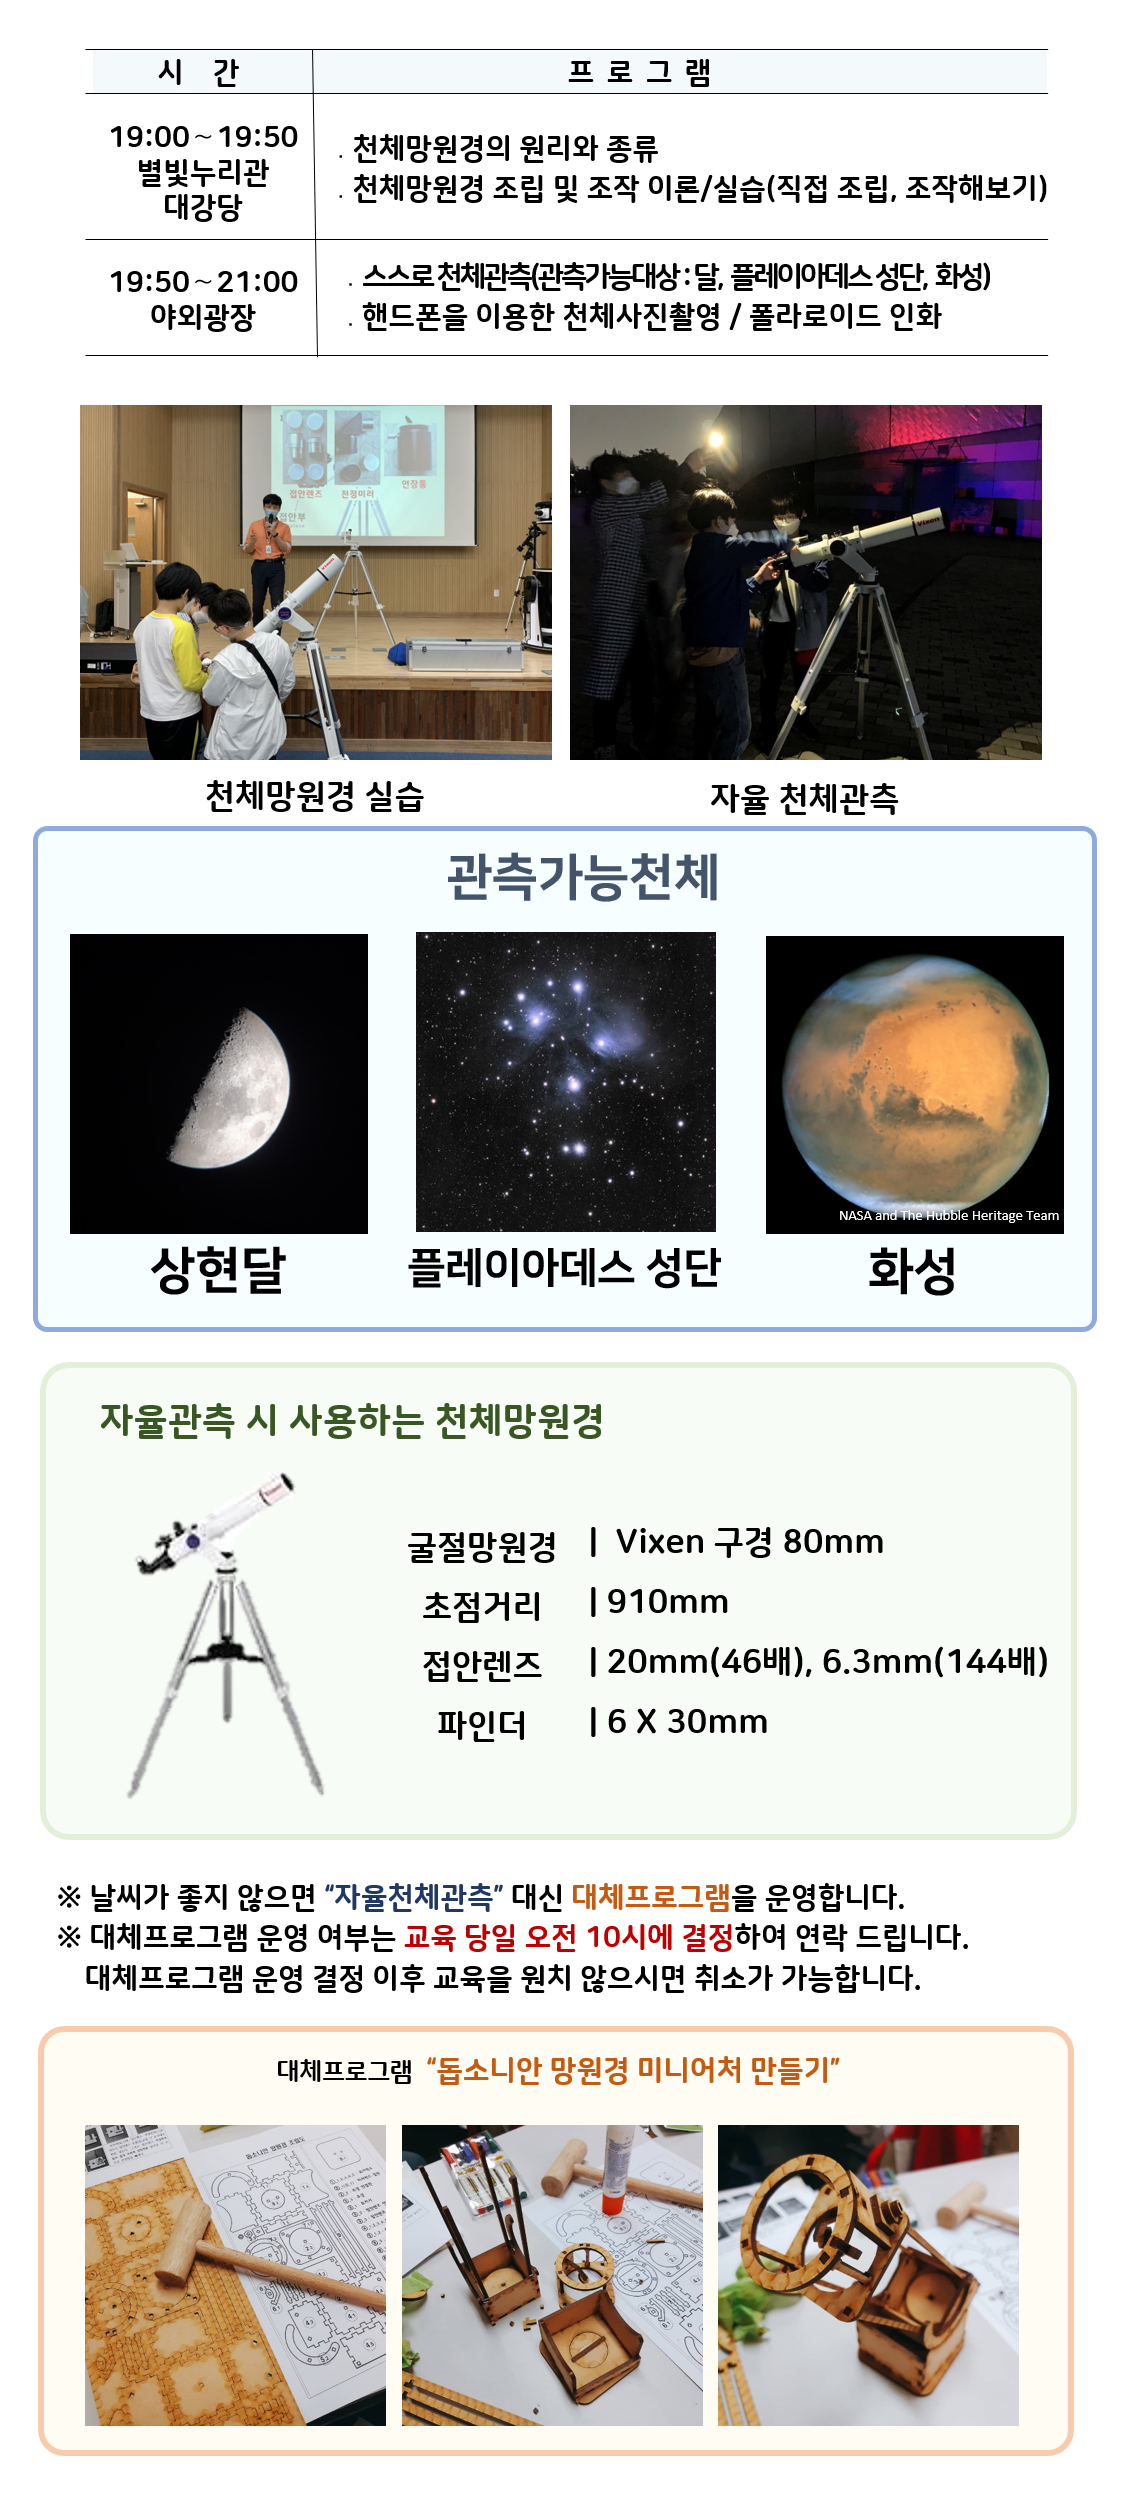  관측대장 시간 프로그램 19:00～19:50 별빛누리관 대강당 ․천체망원경의 원리와 종류 ․천체망원경 조립 및 조작 이론/실습(직접 조립, 조작해보기) |19:50～21:00 야외광장 ․스스로 천체관측(관측가능대상 : 달,  아크투르스,  화성) ․핸드폰을 이용한 천체사진촬영 / 폴라로이드 인화|  천체망원경 실습(천체망원경 실습하는 사진) |자율 천체관측(관람객이 자율적으로 천체관측하는 모습)|관찰가능한 천체 상현달(상현달 사진), 아크투르스(아크투르스 사진), 화성(화성 사진)|자율관측 시 사용하는 천체 망원경(천체망원경 사진),  굴절망원경 Vixen 구경 80mm 초점거리 910mm 접안렌즈 20mm(46배), 6.3mm(144배) 파인더 6 X 30mm| ※ 날씨가 좋지 않으면 “자율천체관측” 대신 대체프로그램을 운영합니다.  ※ 대체프로그램 운영 여부는 교육 당일 오전 10시에 결정하여 연락 드립니다. 대체프로그램 운영 결정 이후 교육을 원치 않으시면 취소가 가능합니다.| 대체프로그램 '돕소니안 망원경 미니어처 만들기(돕소니안 망원경 미니어처 만들기 재료사진, 돕소니안 망원경 미니어처 만들기 제작과정 사진, 돕소니안 망원경 미니어처 만들기 완성품 사진)' 